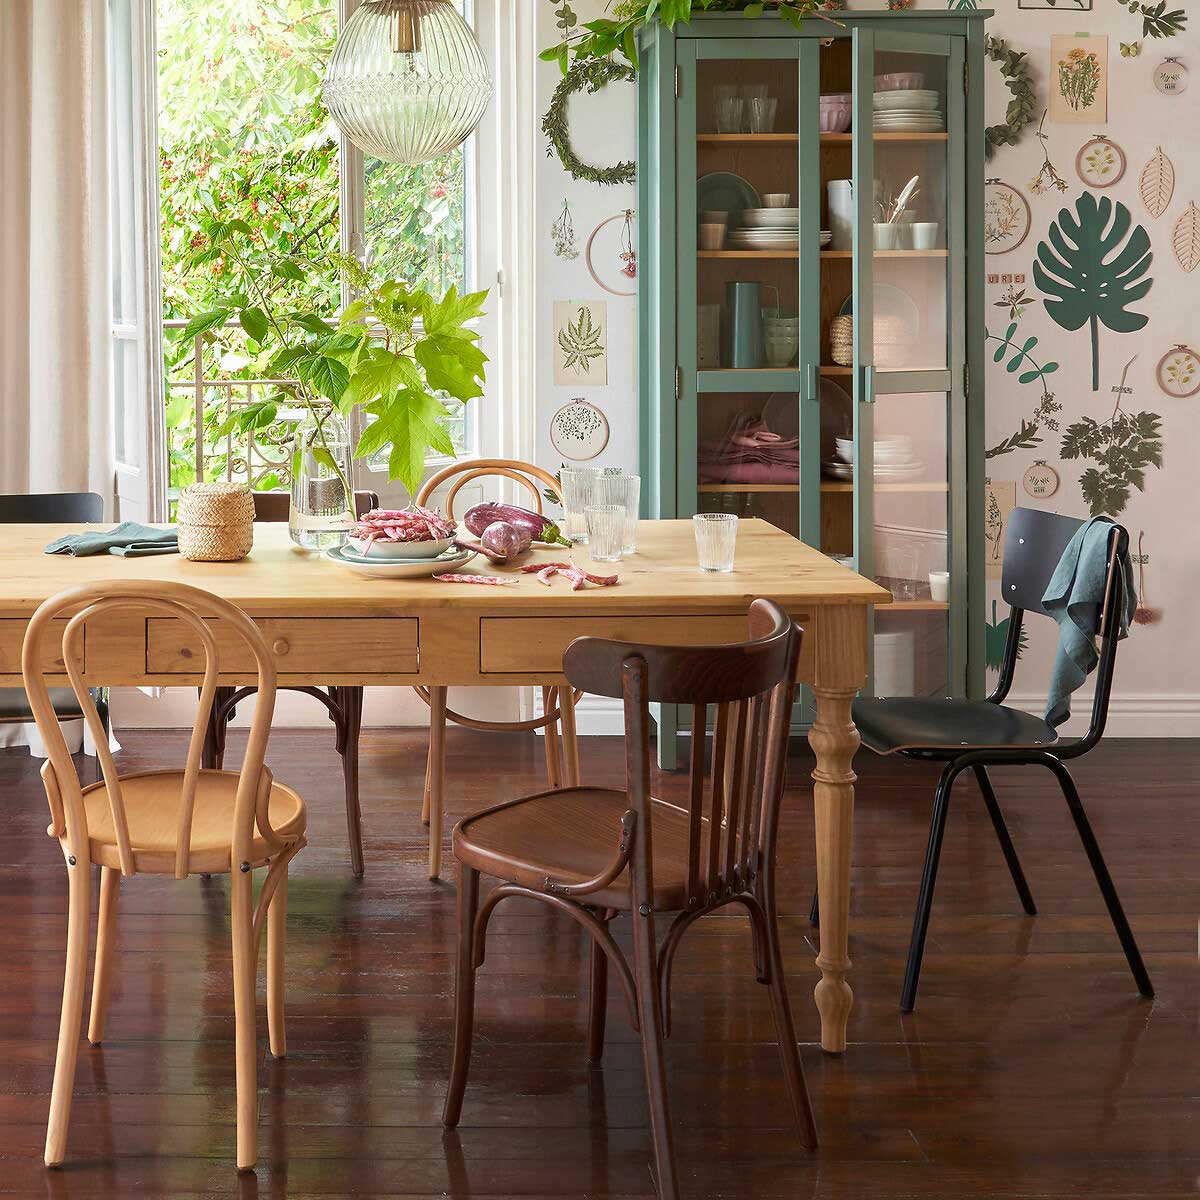 Cucina in Stile Vintage: Crea un Ambiente Elegante con Colori Pastello e Dettagli!